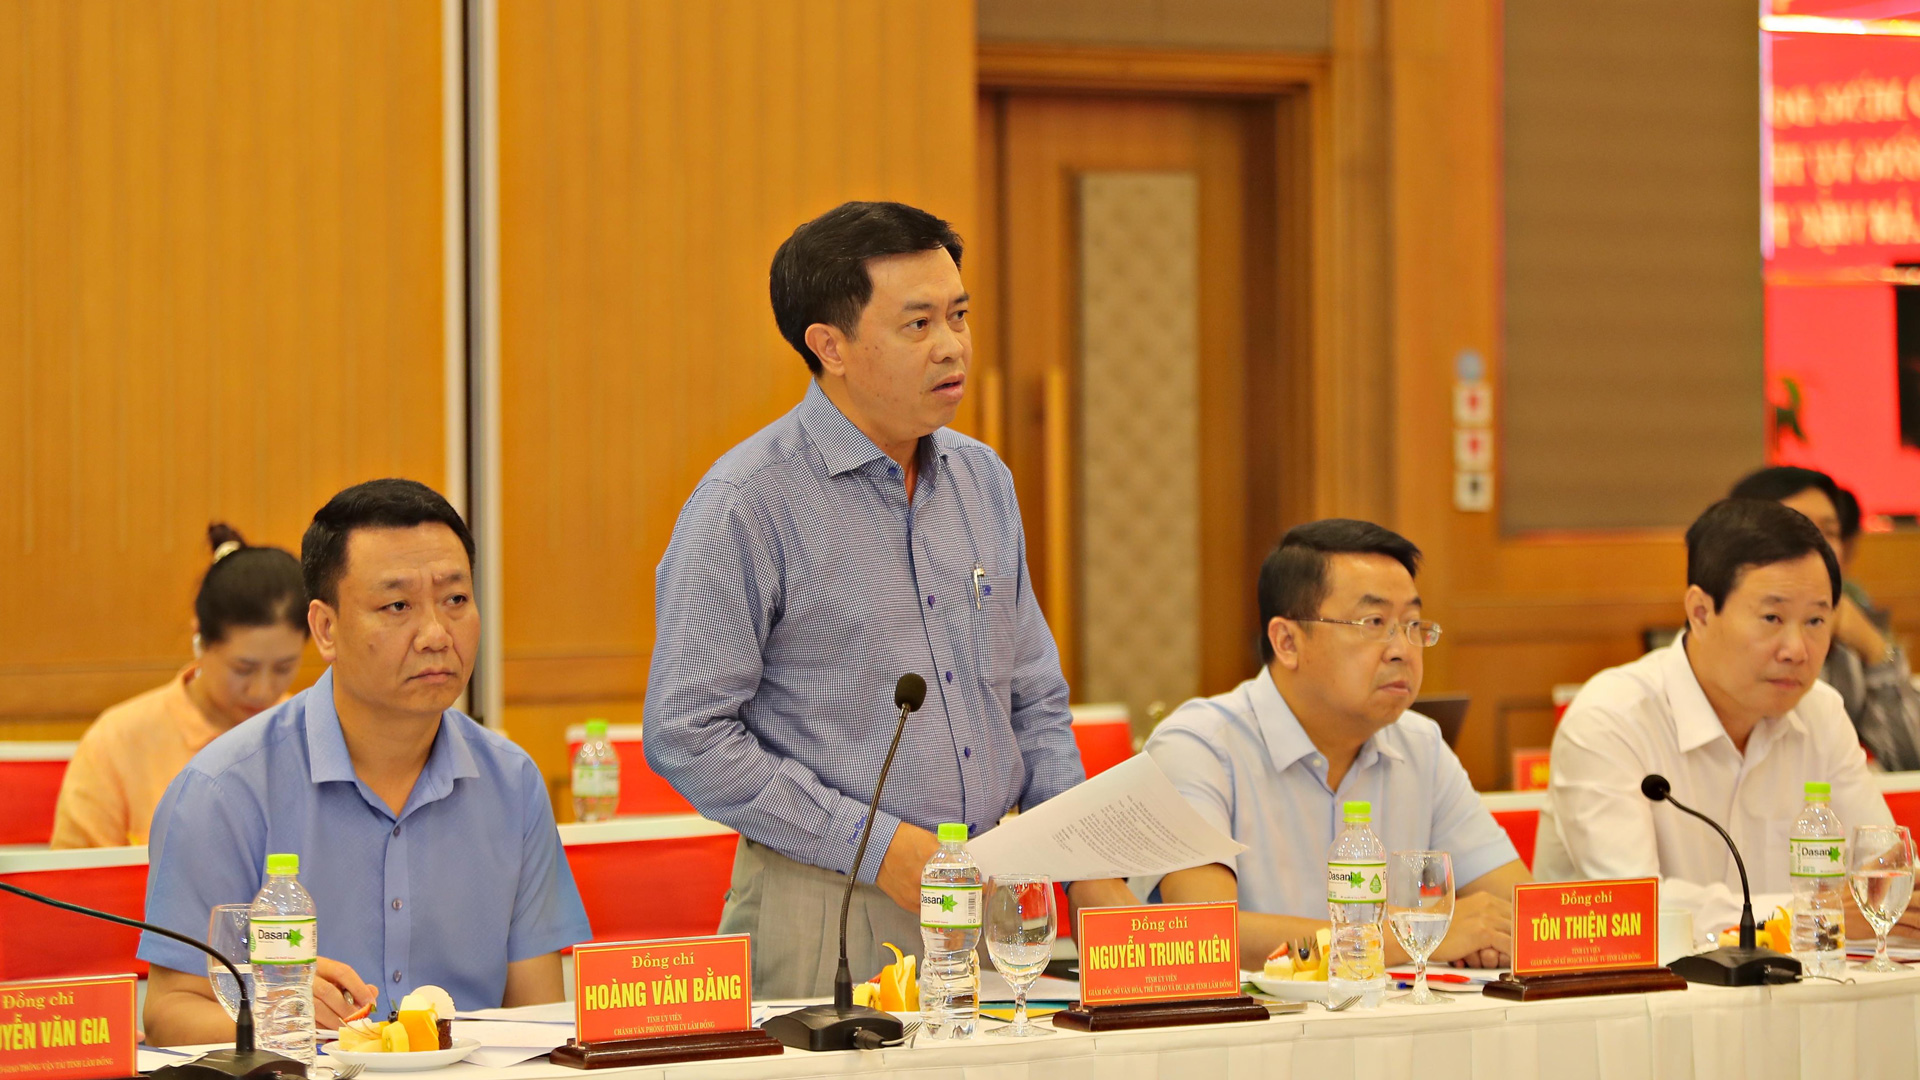 Đồng chí Nguyễn Trung Kiên - Giám đốc Sở Văn hoá - Thể thao và Du lịch tỉnh Lâm Đồng đánh giá việc hợp tác trong lĩnh vực văn hoá của hai địa phương